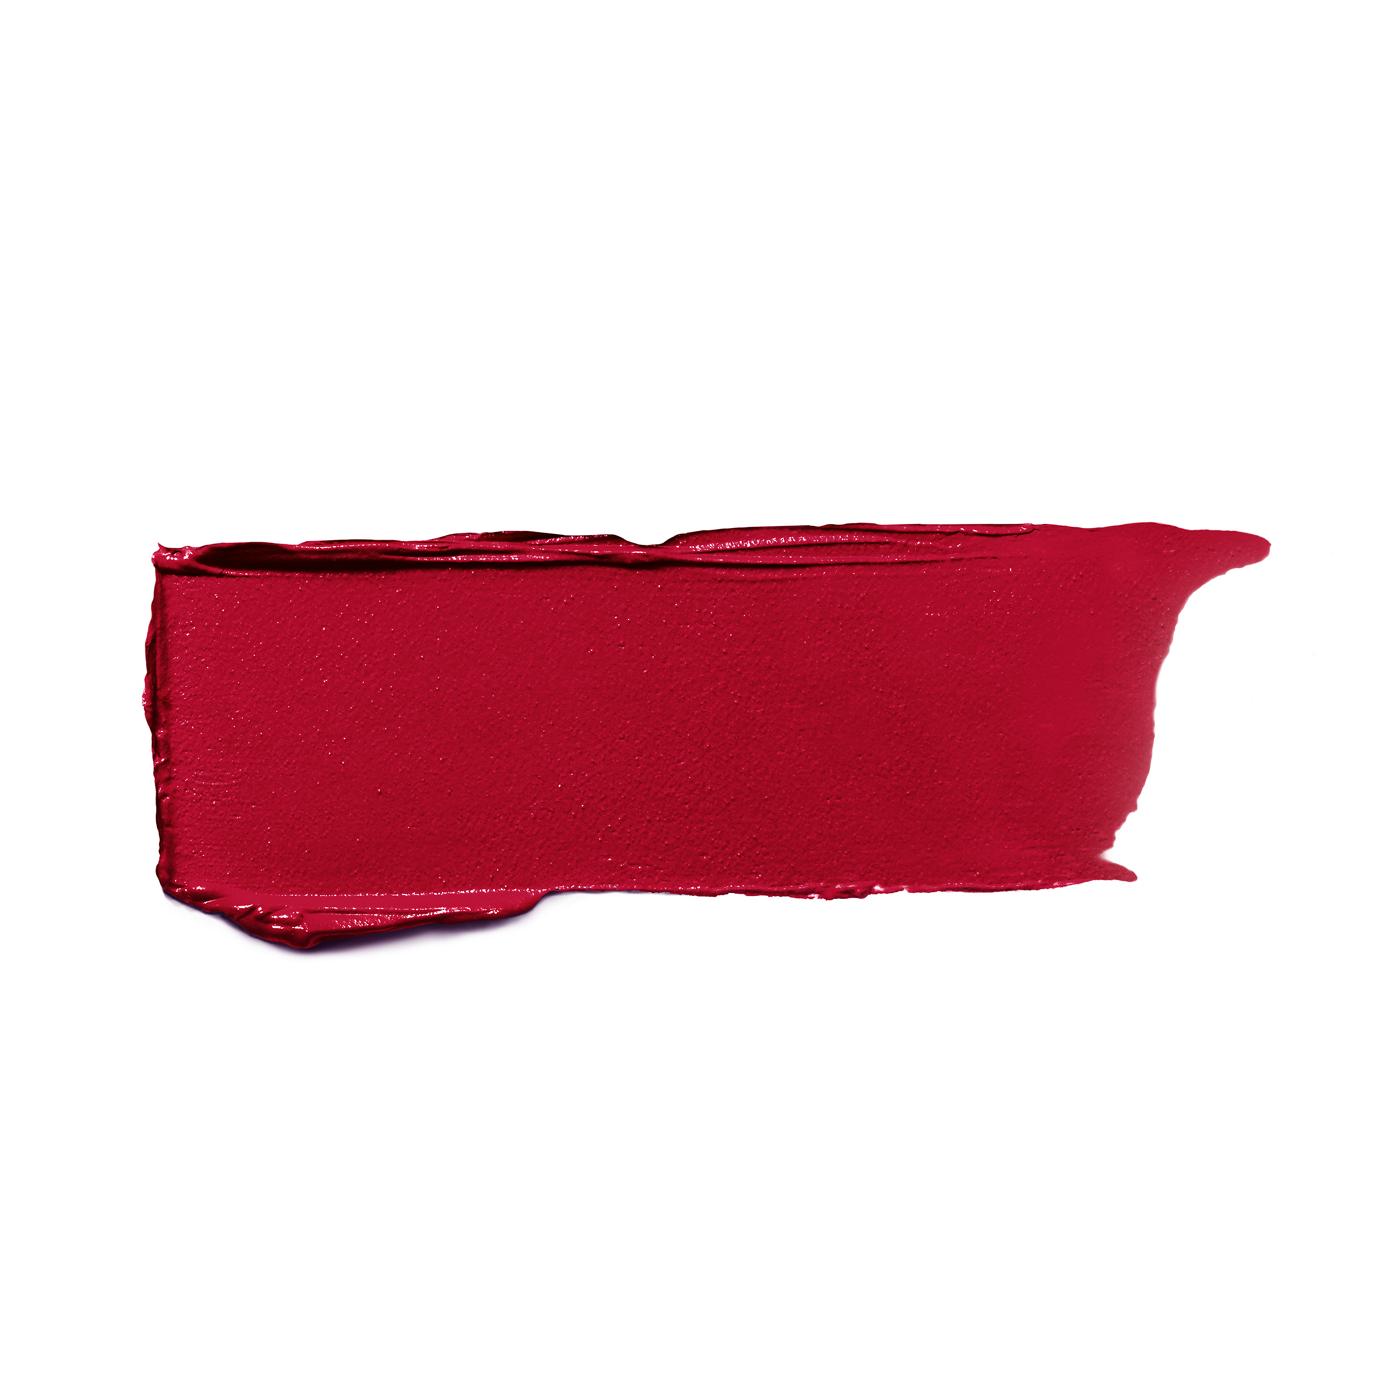 L'Oréal Paris Colour Riche Original Satin Lipstick for Moisturized Lips Blazing Lava; image 2 of 2